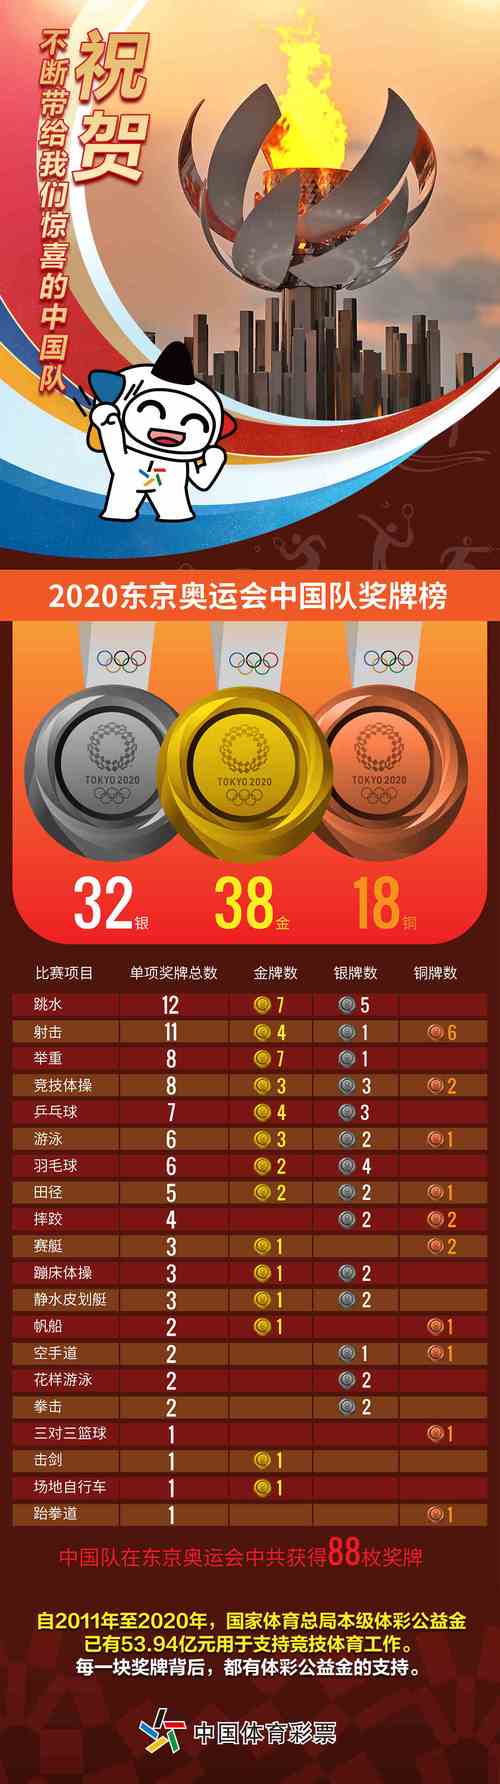 2020东京奥运会中国奖牌数